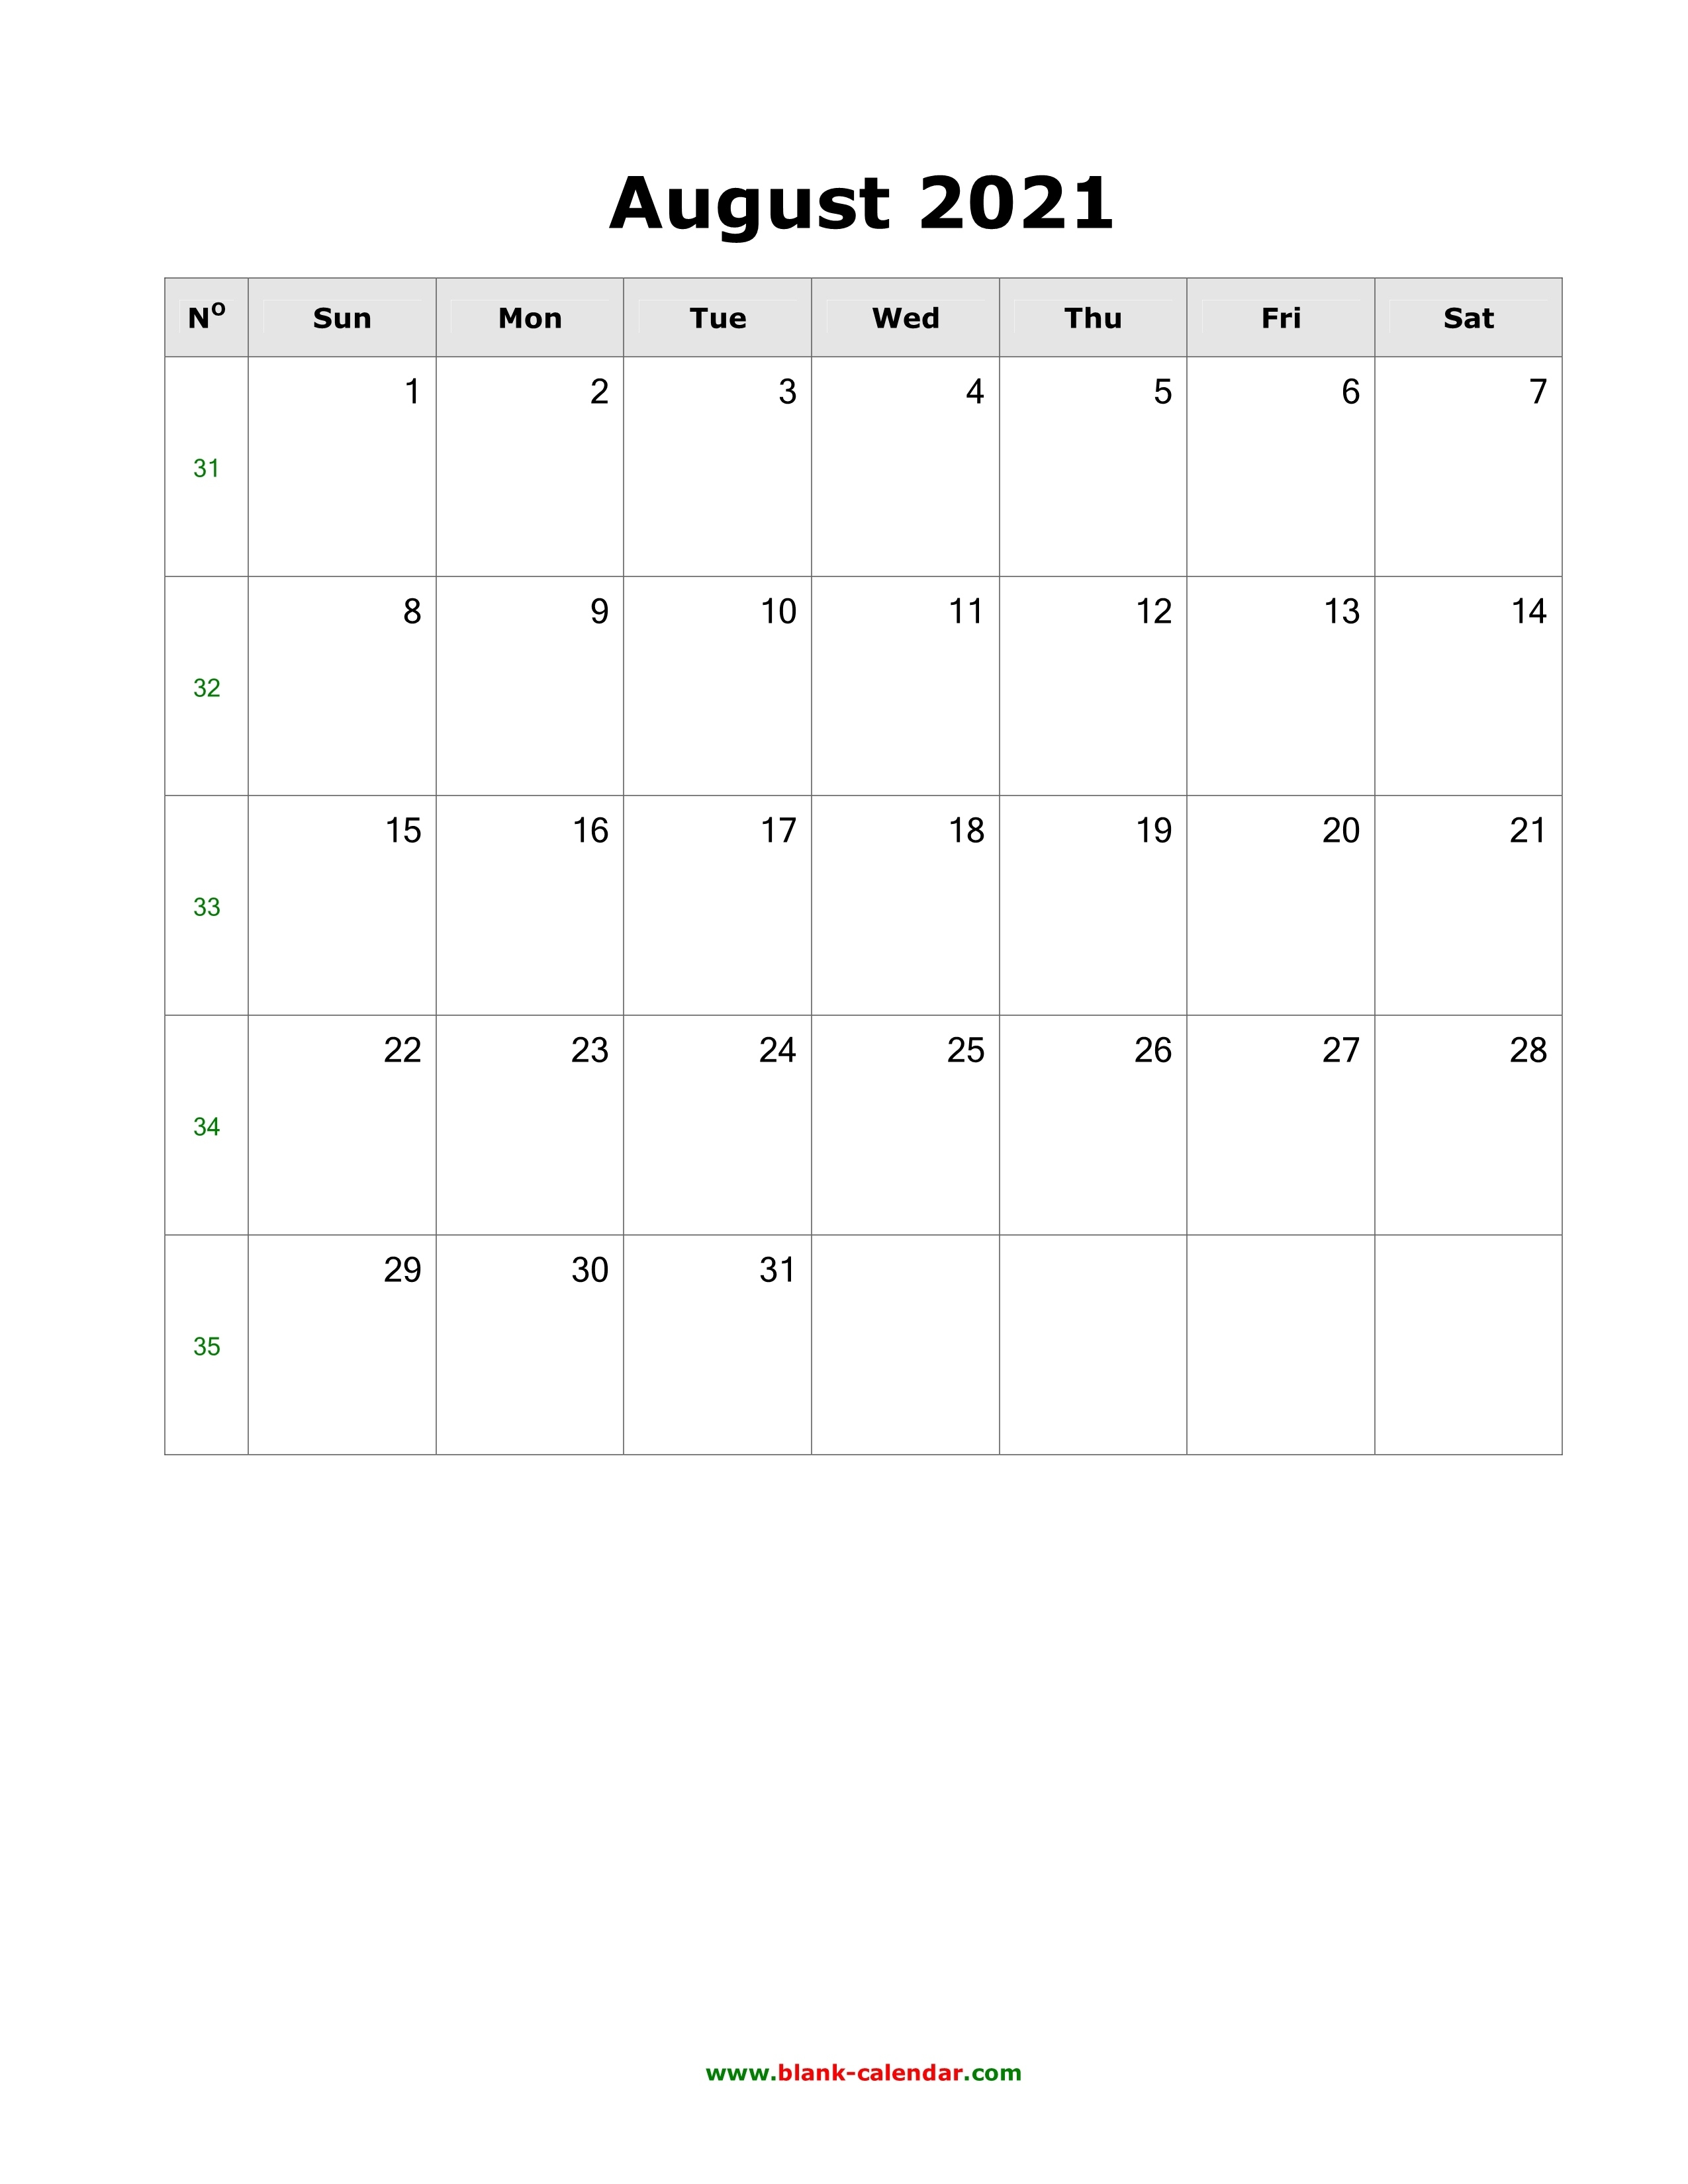 August 2021 Calendar Pdf Portriat | Calendar 2021 August 2020-August 2021 Calendar